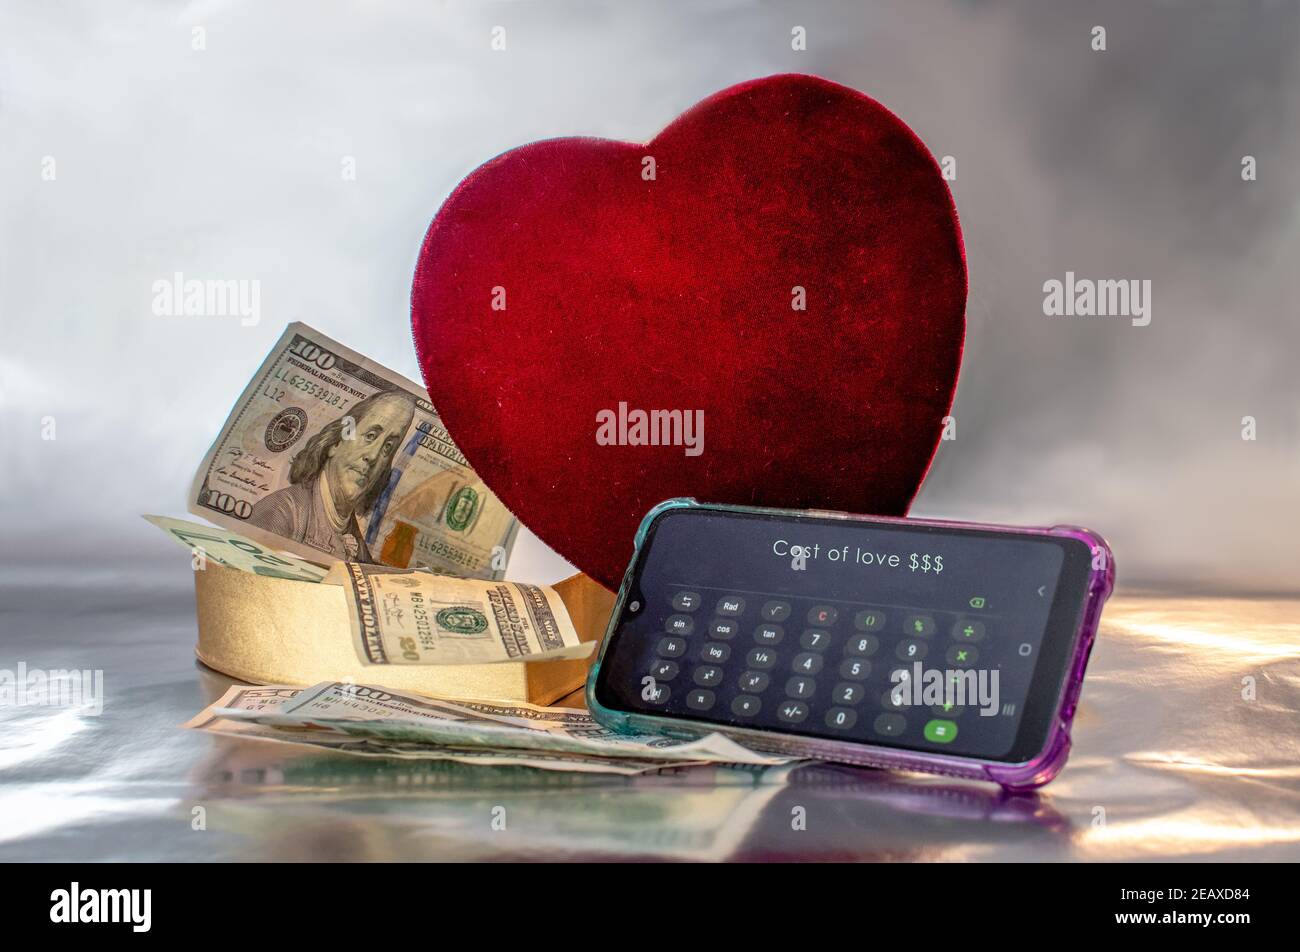 Calculateur d'amour Banque de photographies et d'images à haute résolution  - Alamy